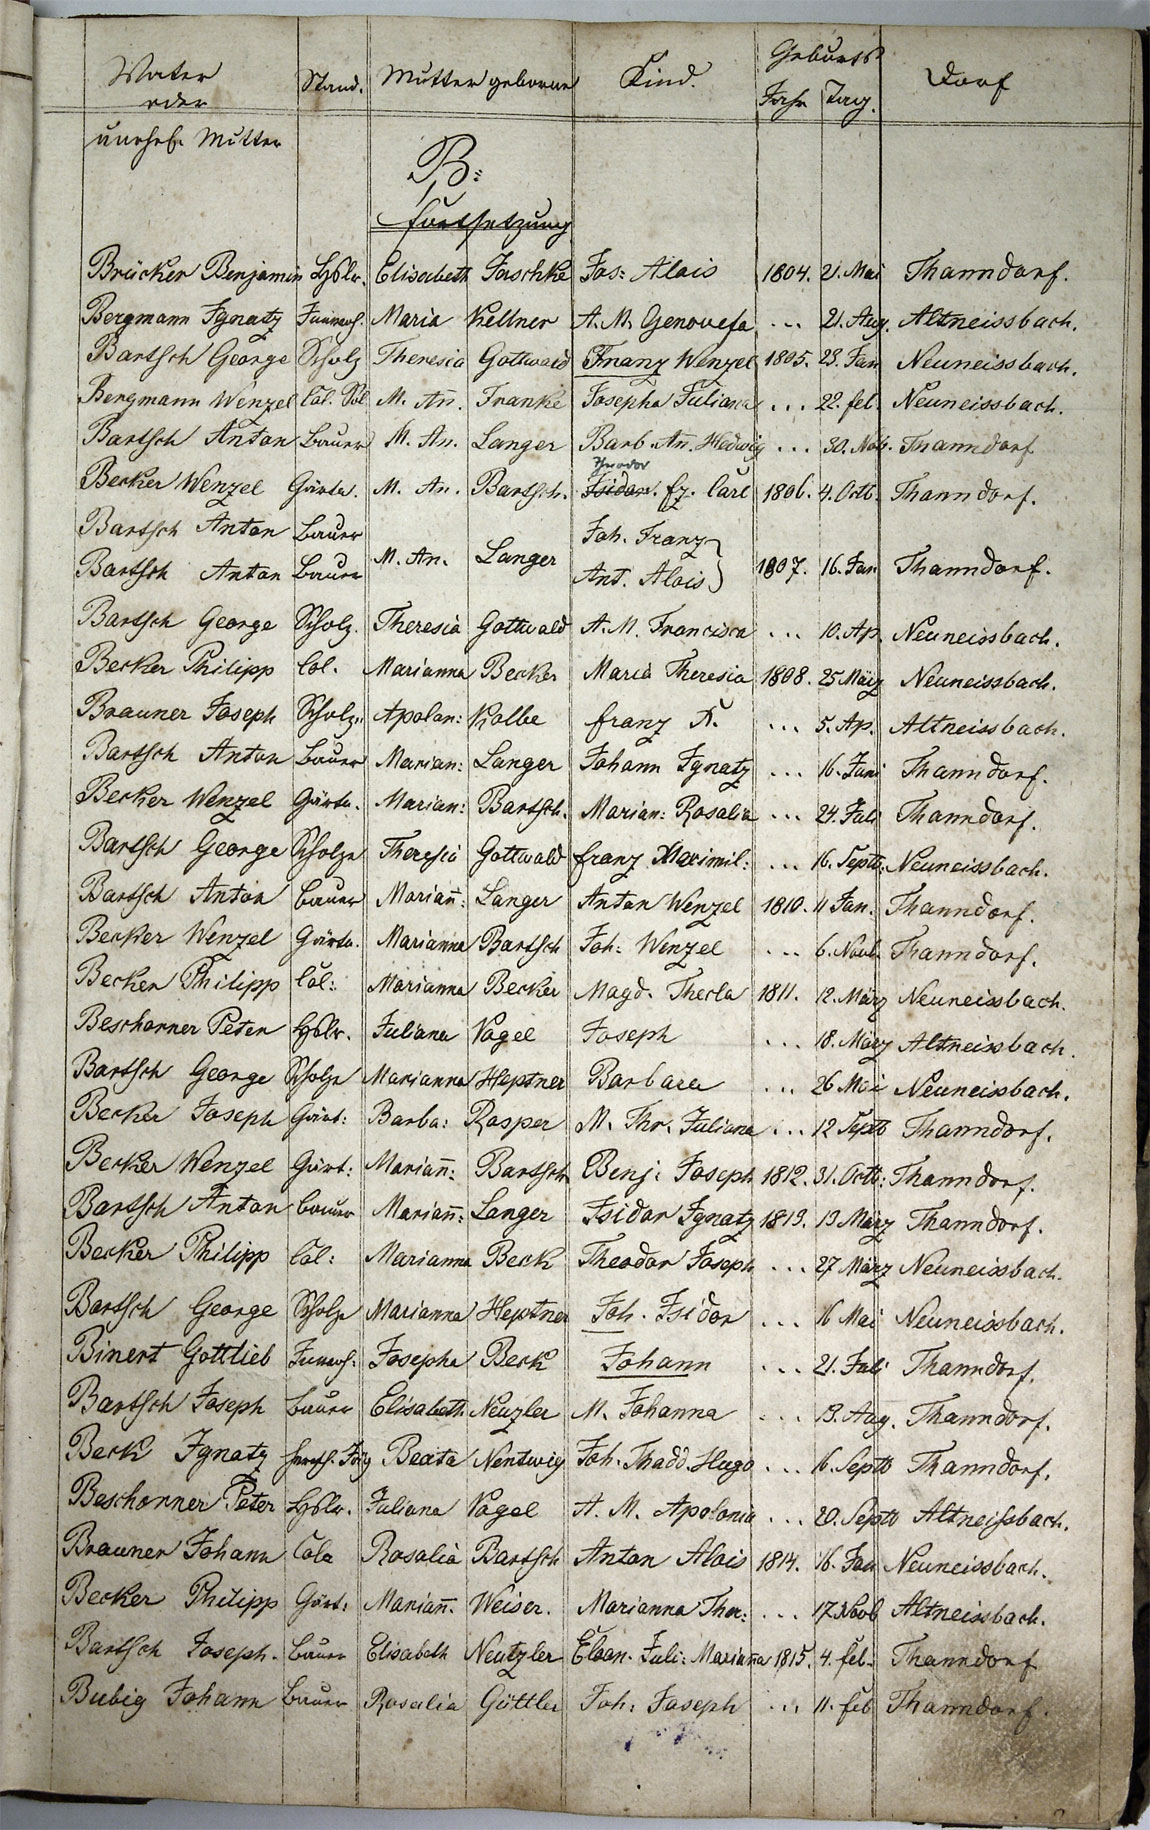 Taufregister 1770 - 1889 Seite 5